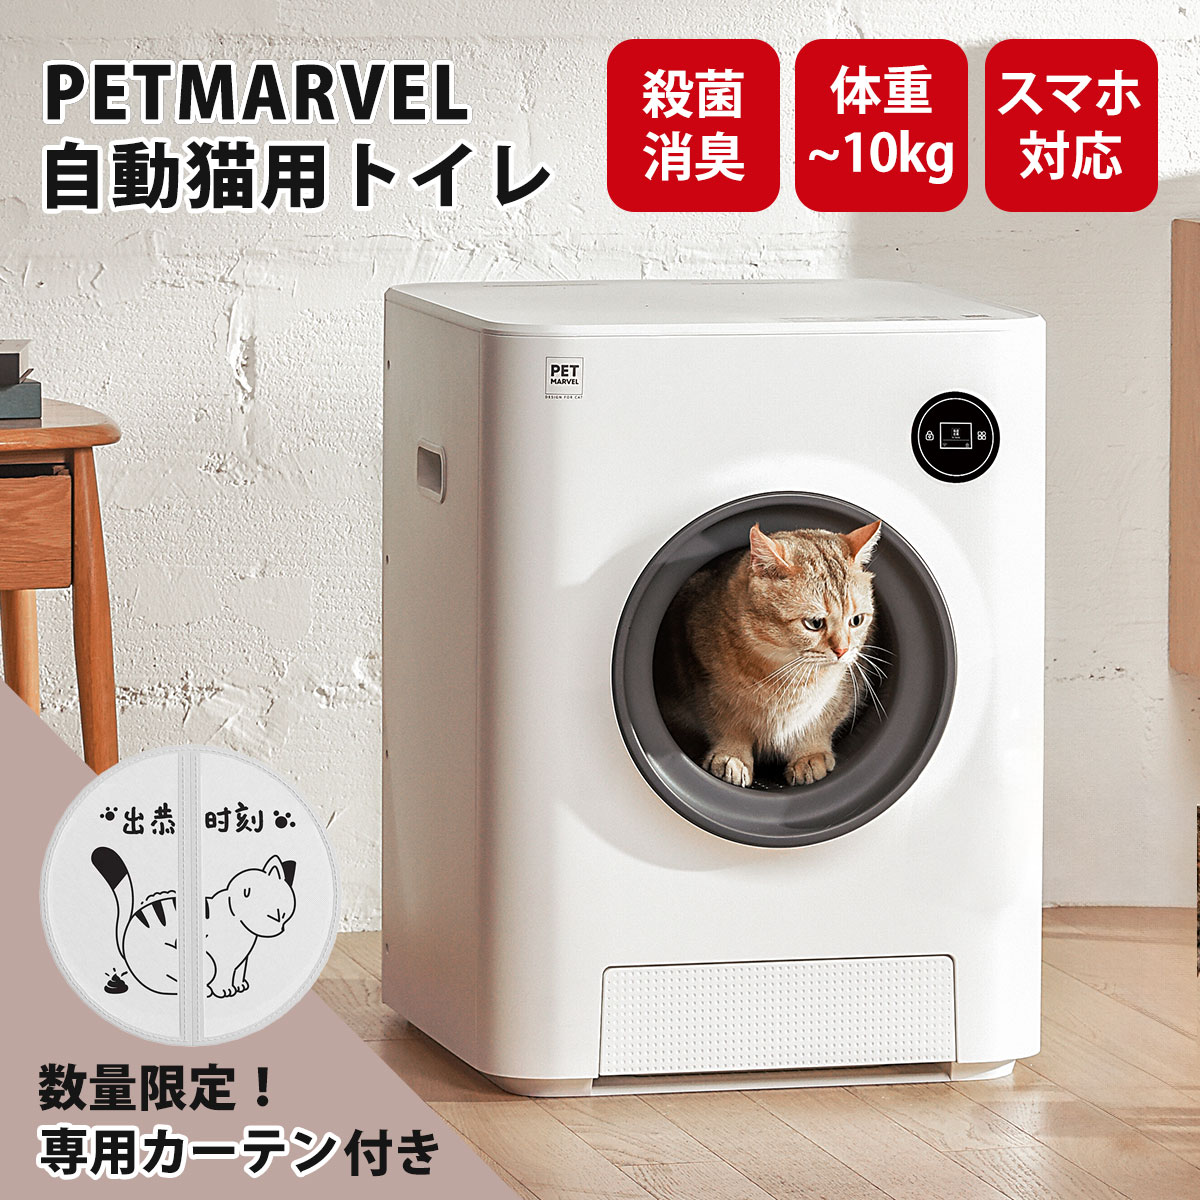 【PET MARVEL】自動猫用トイレ ペットトイレ ネコトイレ 全自動猫トイレ 猫用トイレ【全国送料無料】【正規品】【安心1年保証】